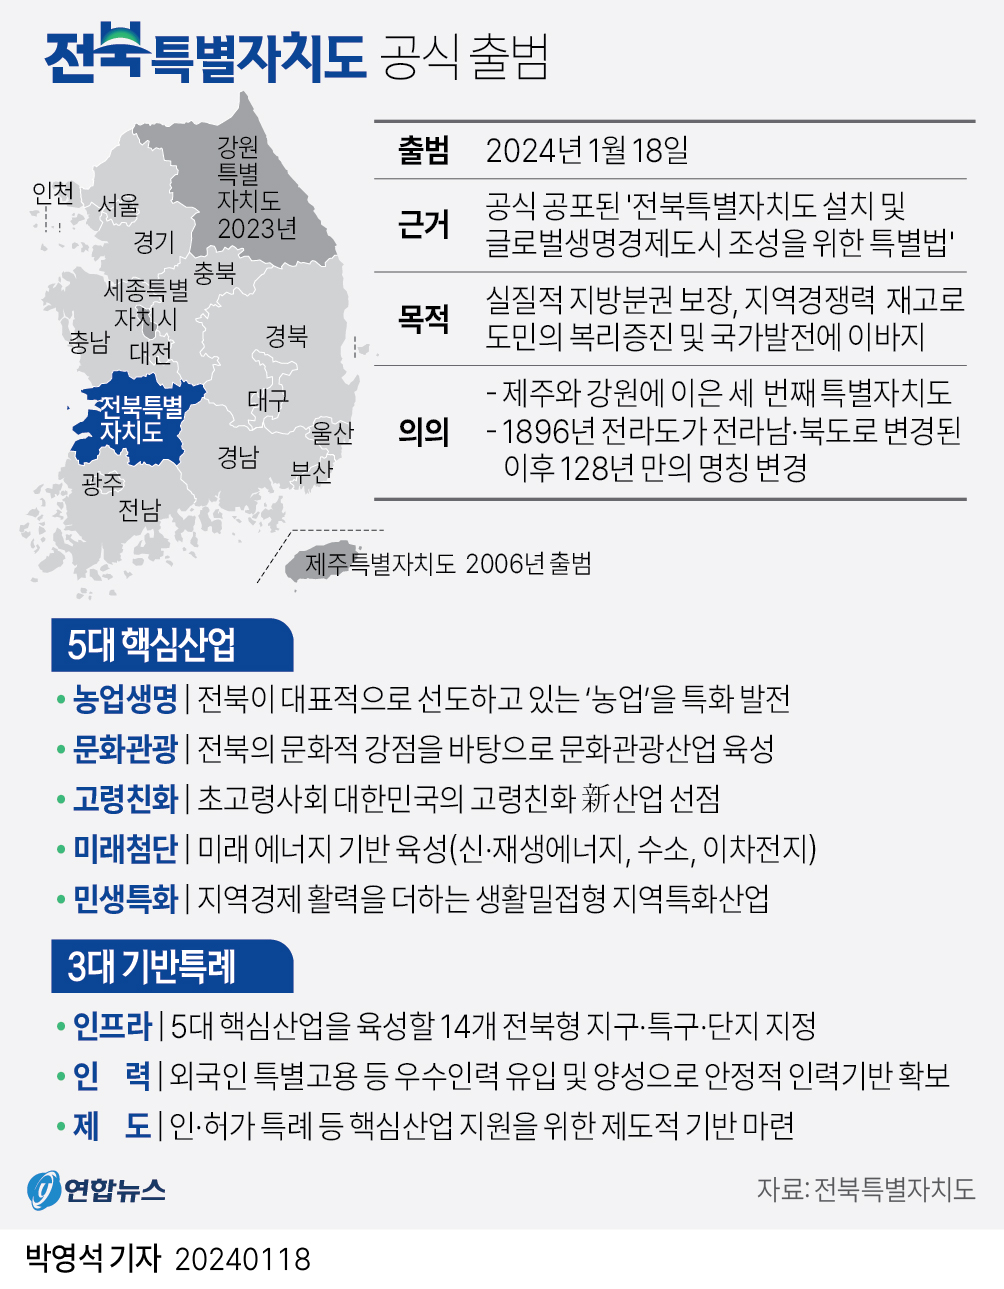 [그래픽] 전북특별자치도 공식 출범